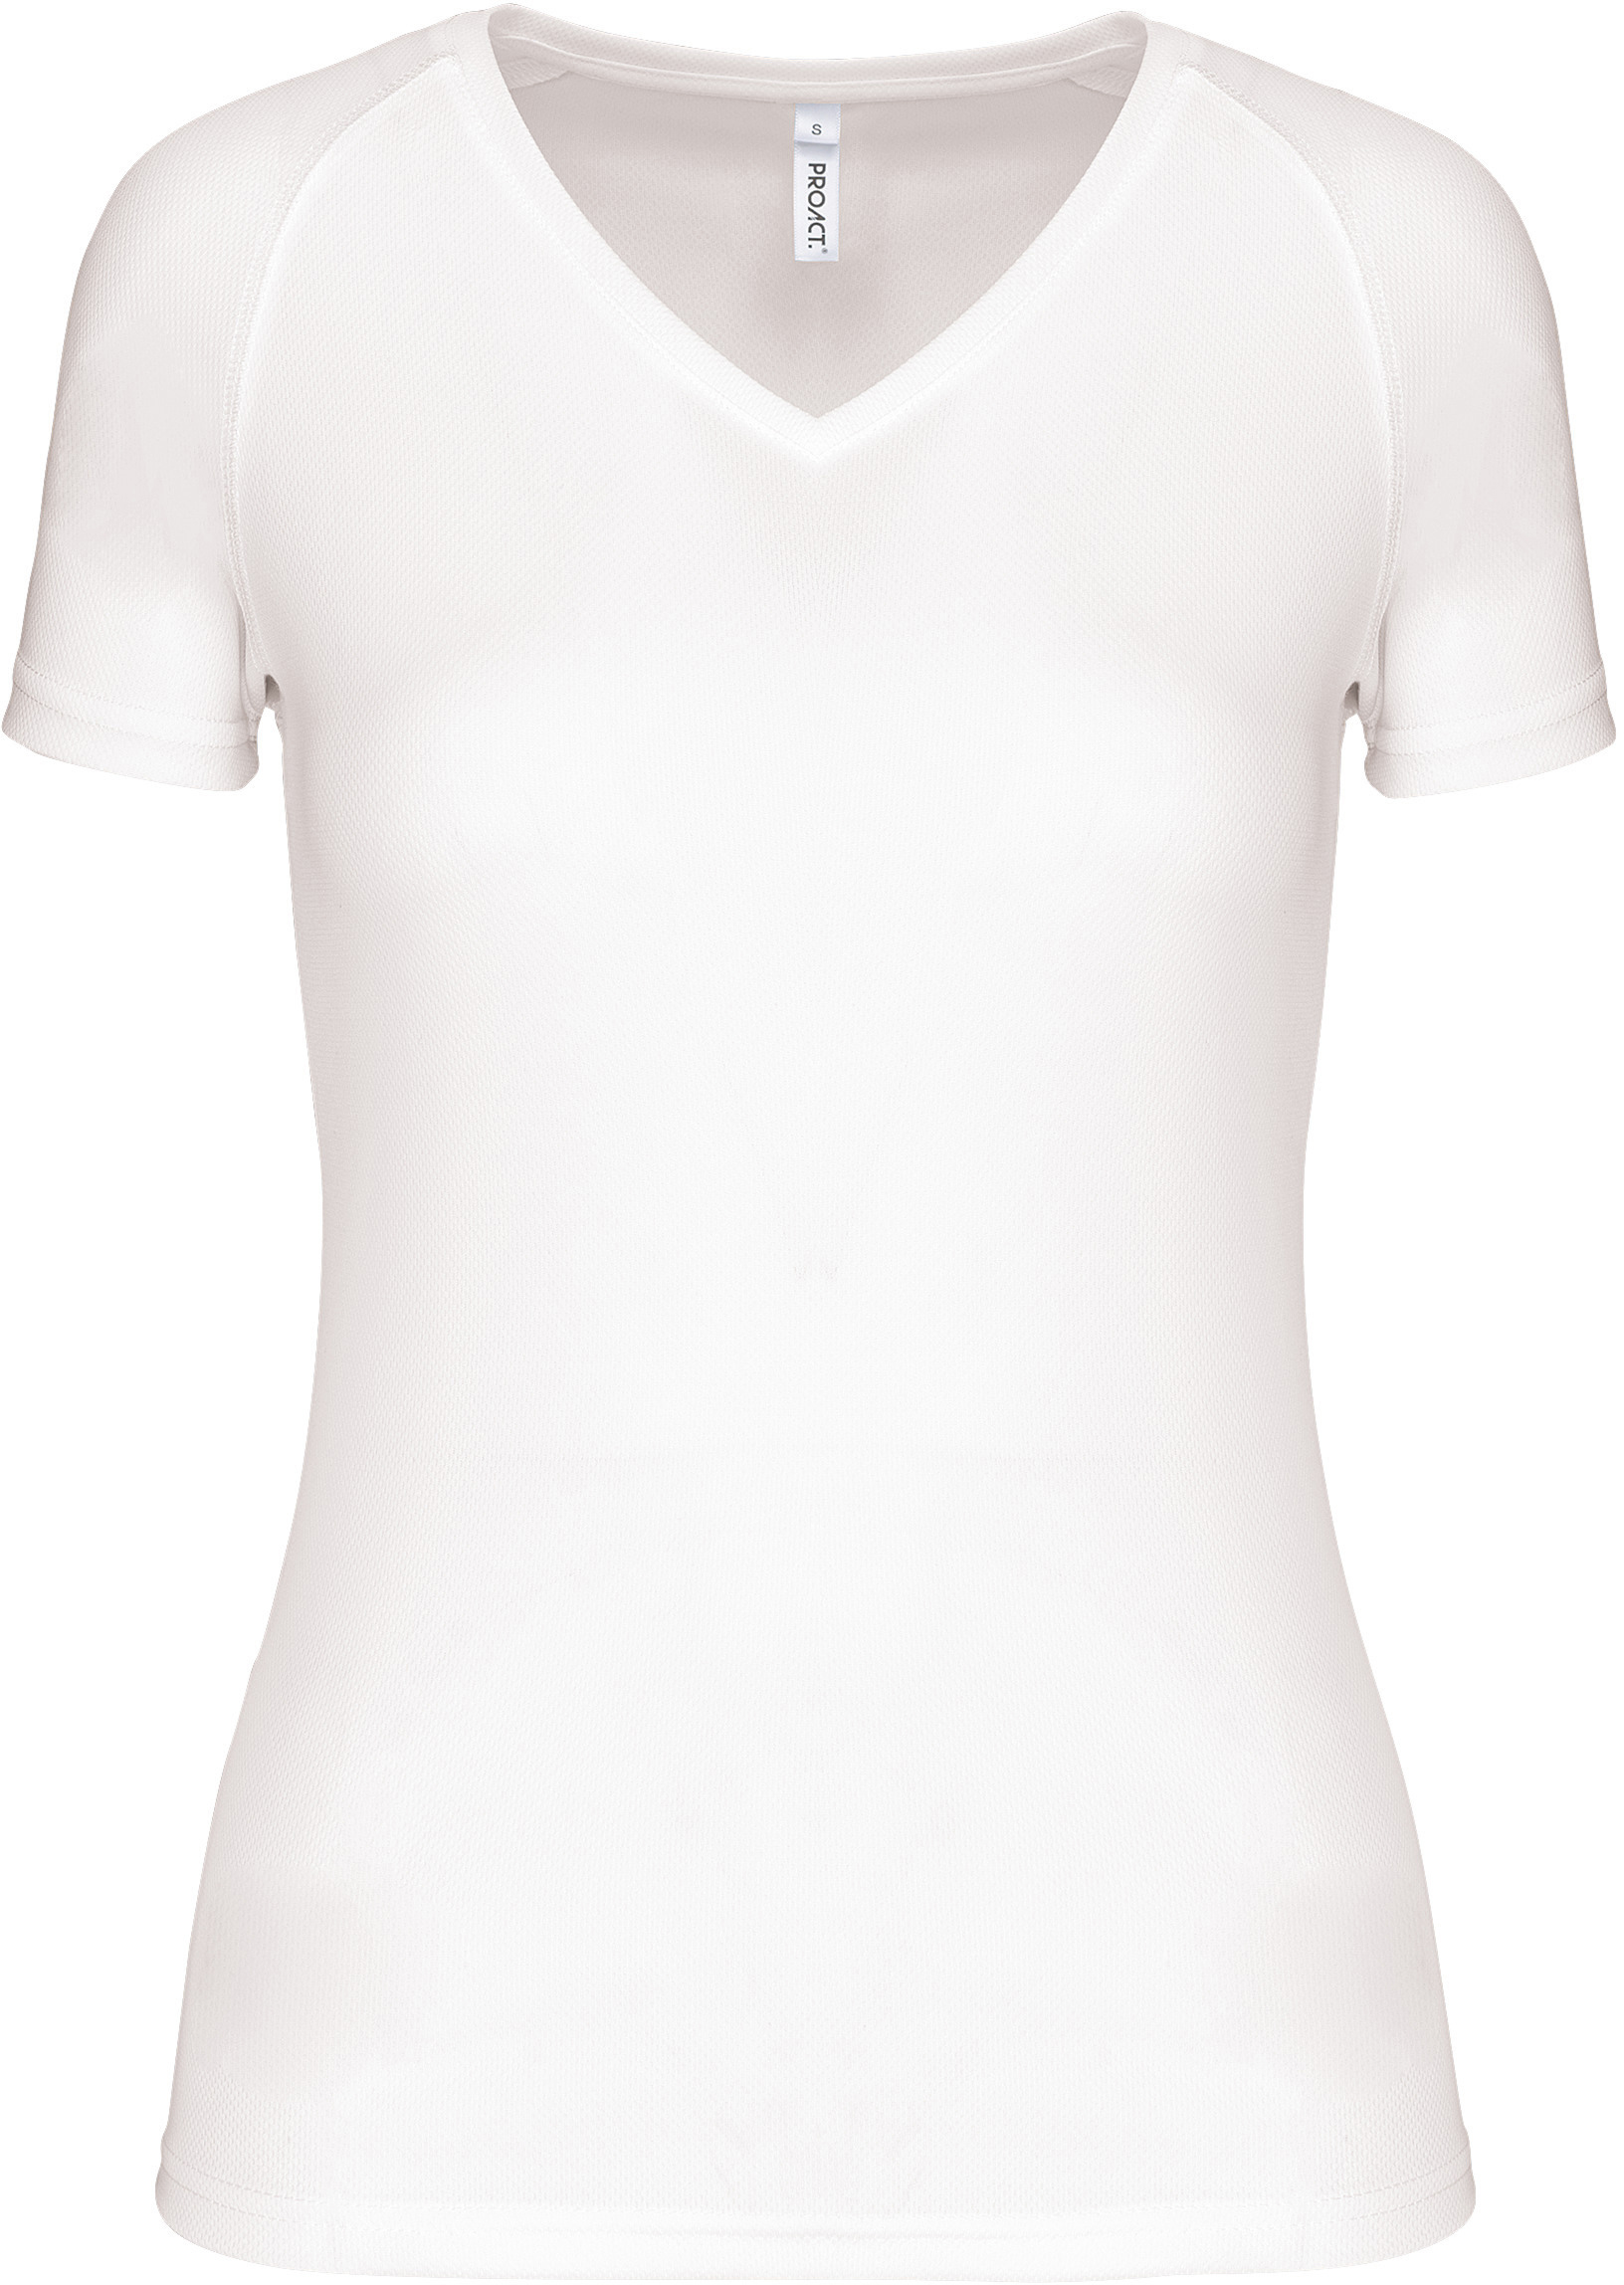 Dámské sportovní tričko s výstřihem do V PA477 Barva: bílá, Velikost: M